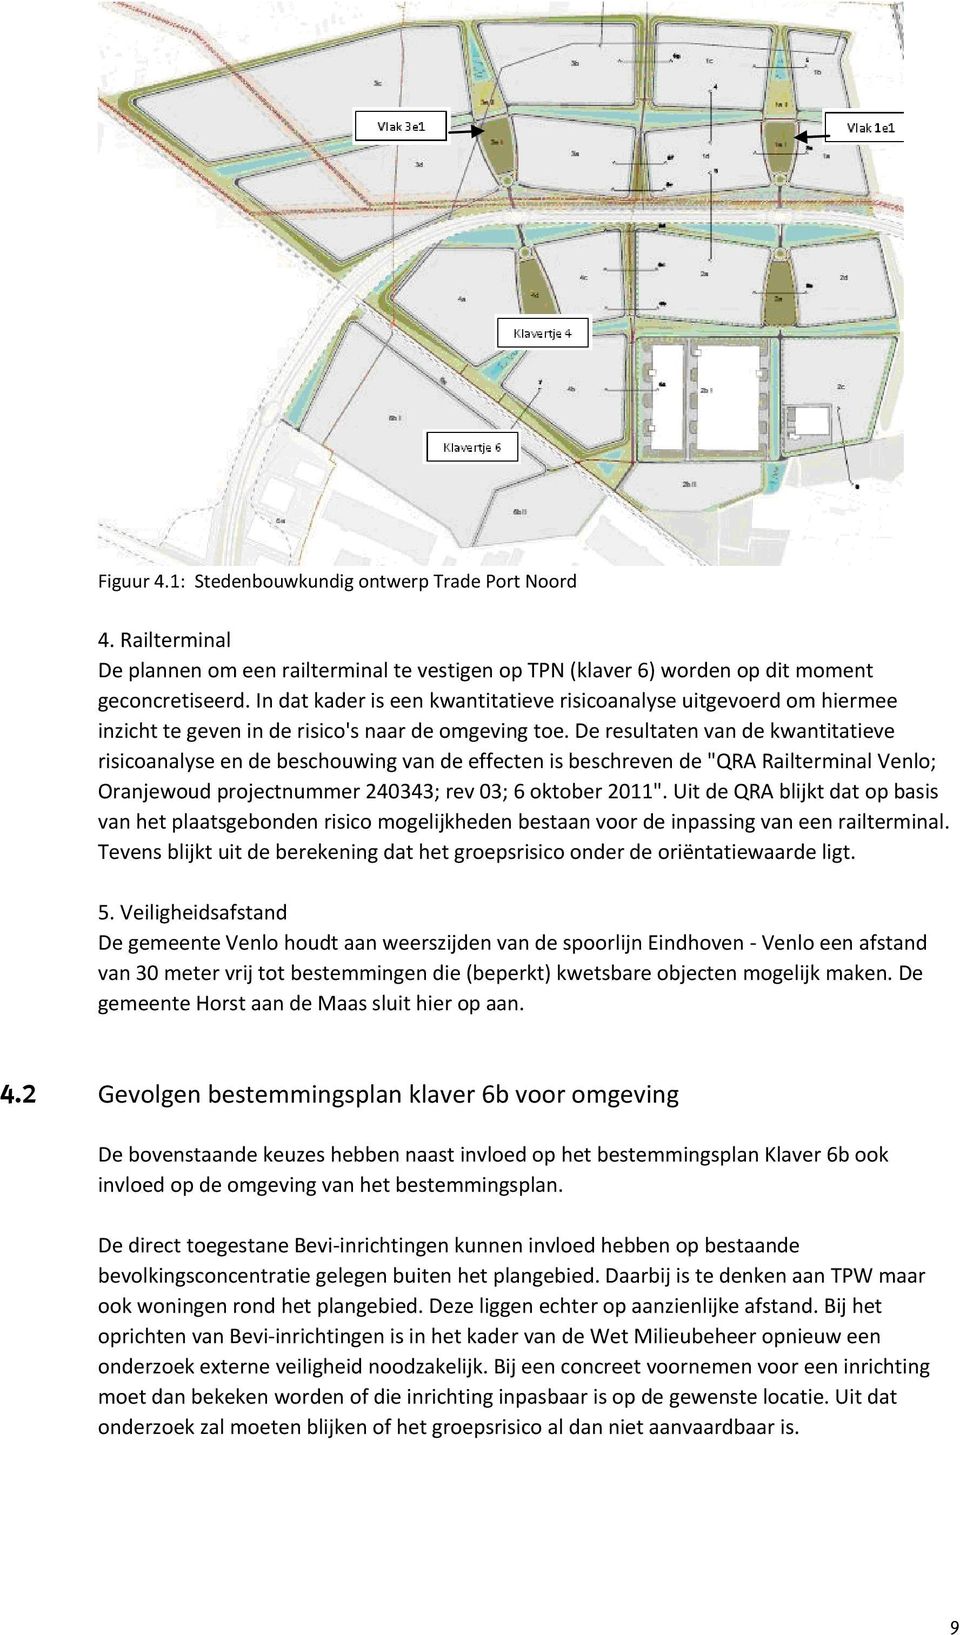 De resultaten van de kwantitatieve risicoanalyse en de beschouwing van de effecten is beschreven de "QRA Railterminal Venlo; Oranjewoud projectnummer 240343; rev 03; 6 oktober 2011".